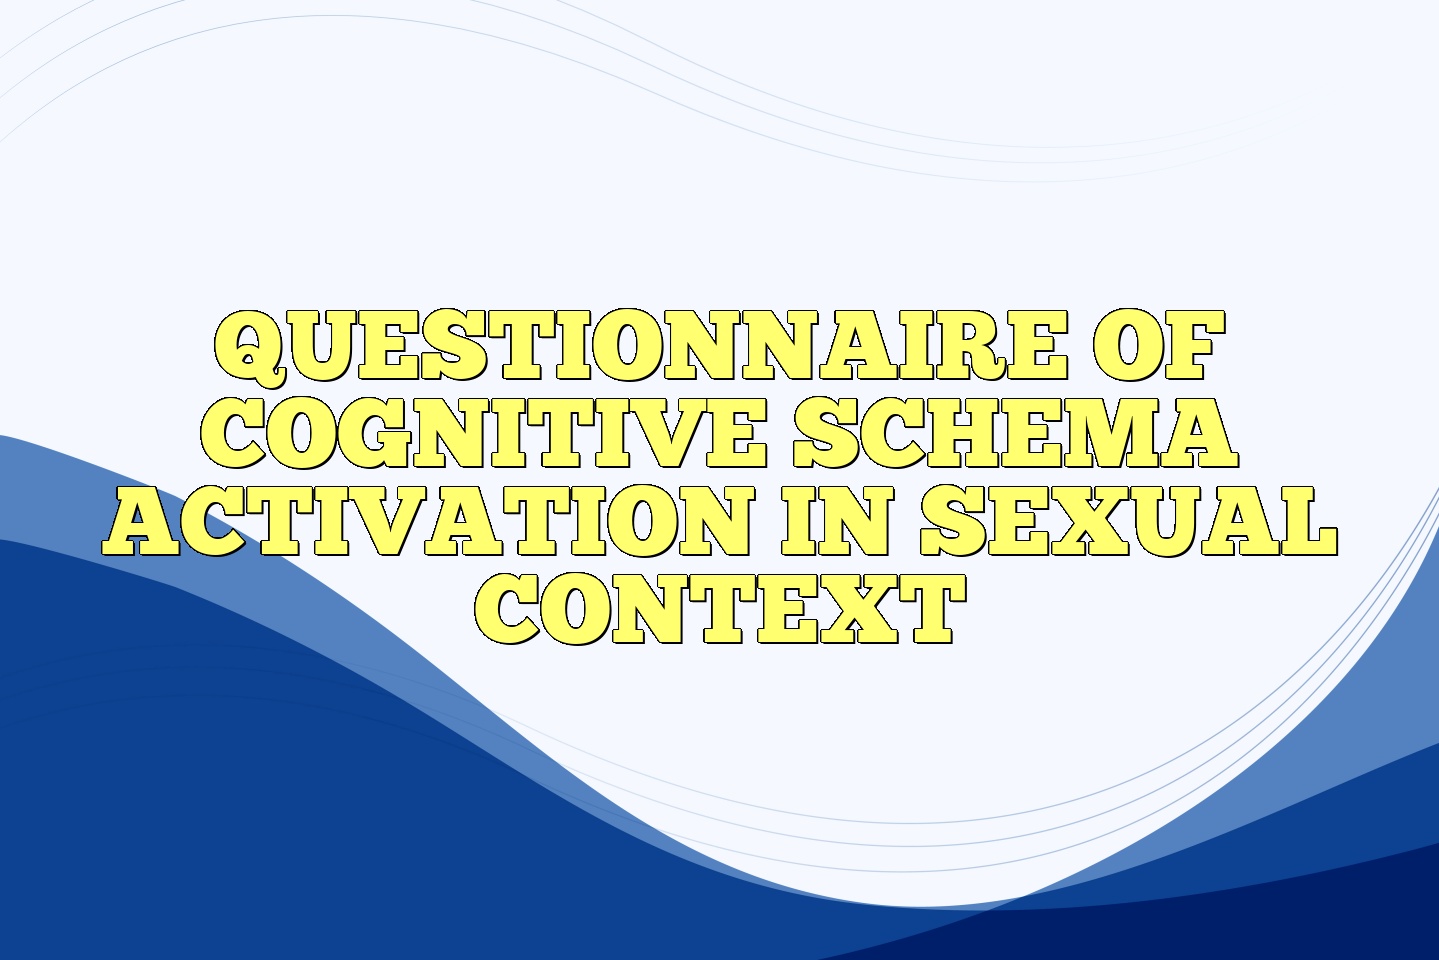 Mean Cognitive Schema Questionnaire-Short Form Scale Scores and